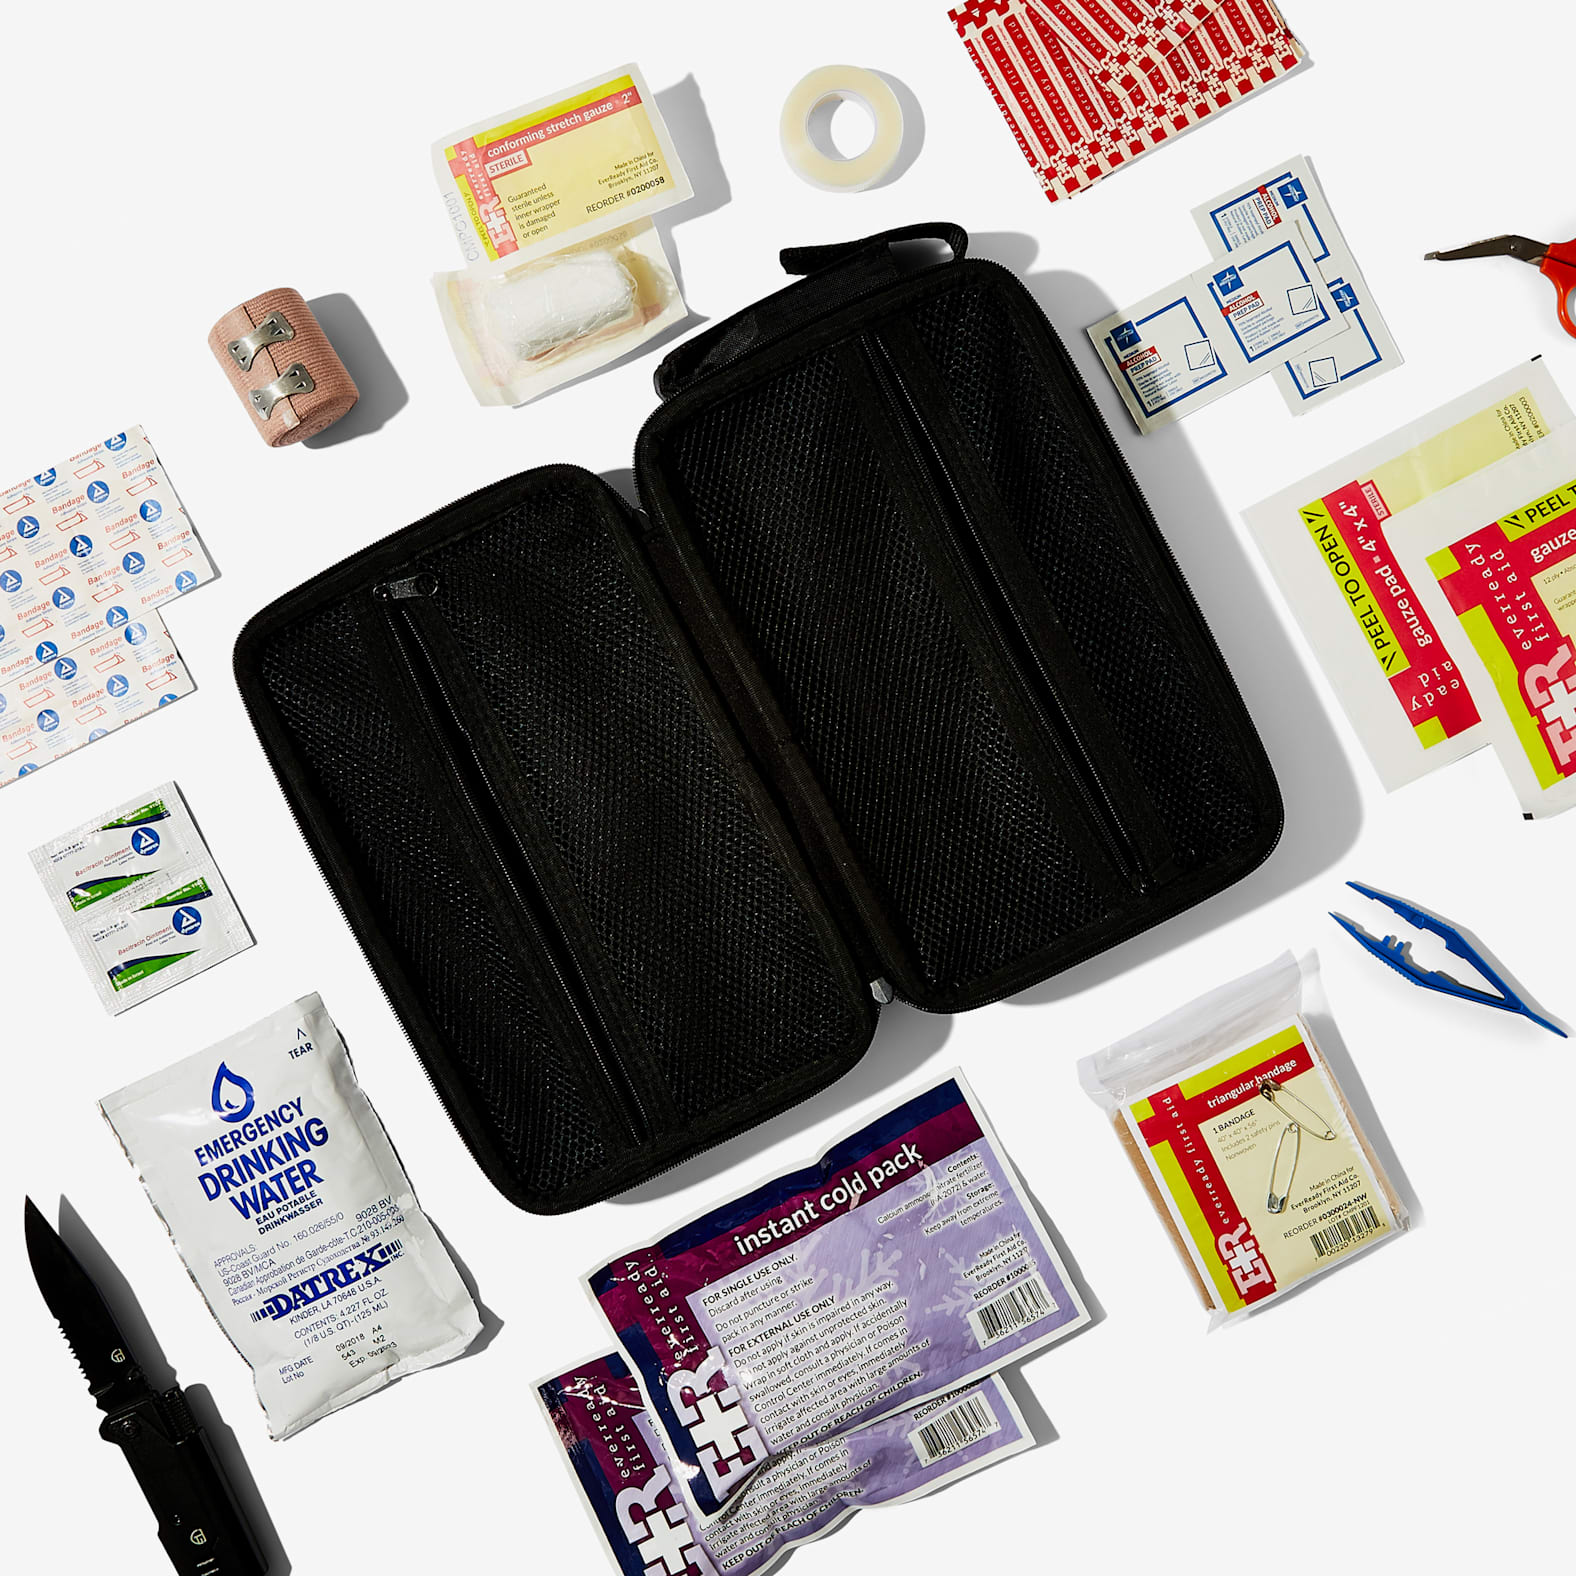 StatGear Auto Kit - First Aid